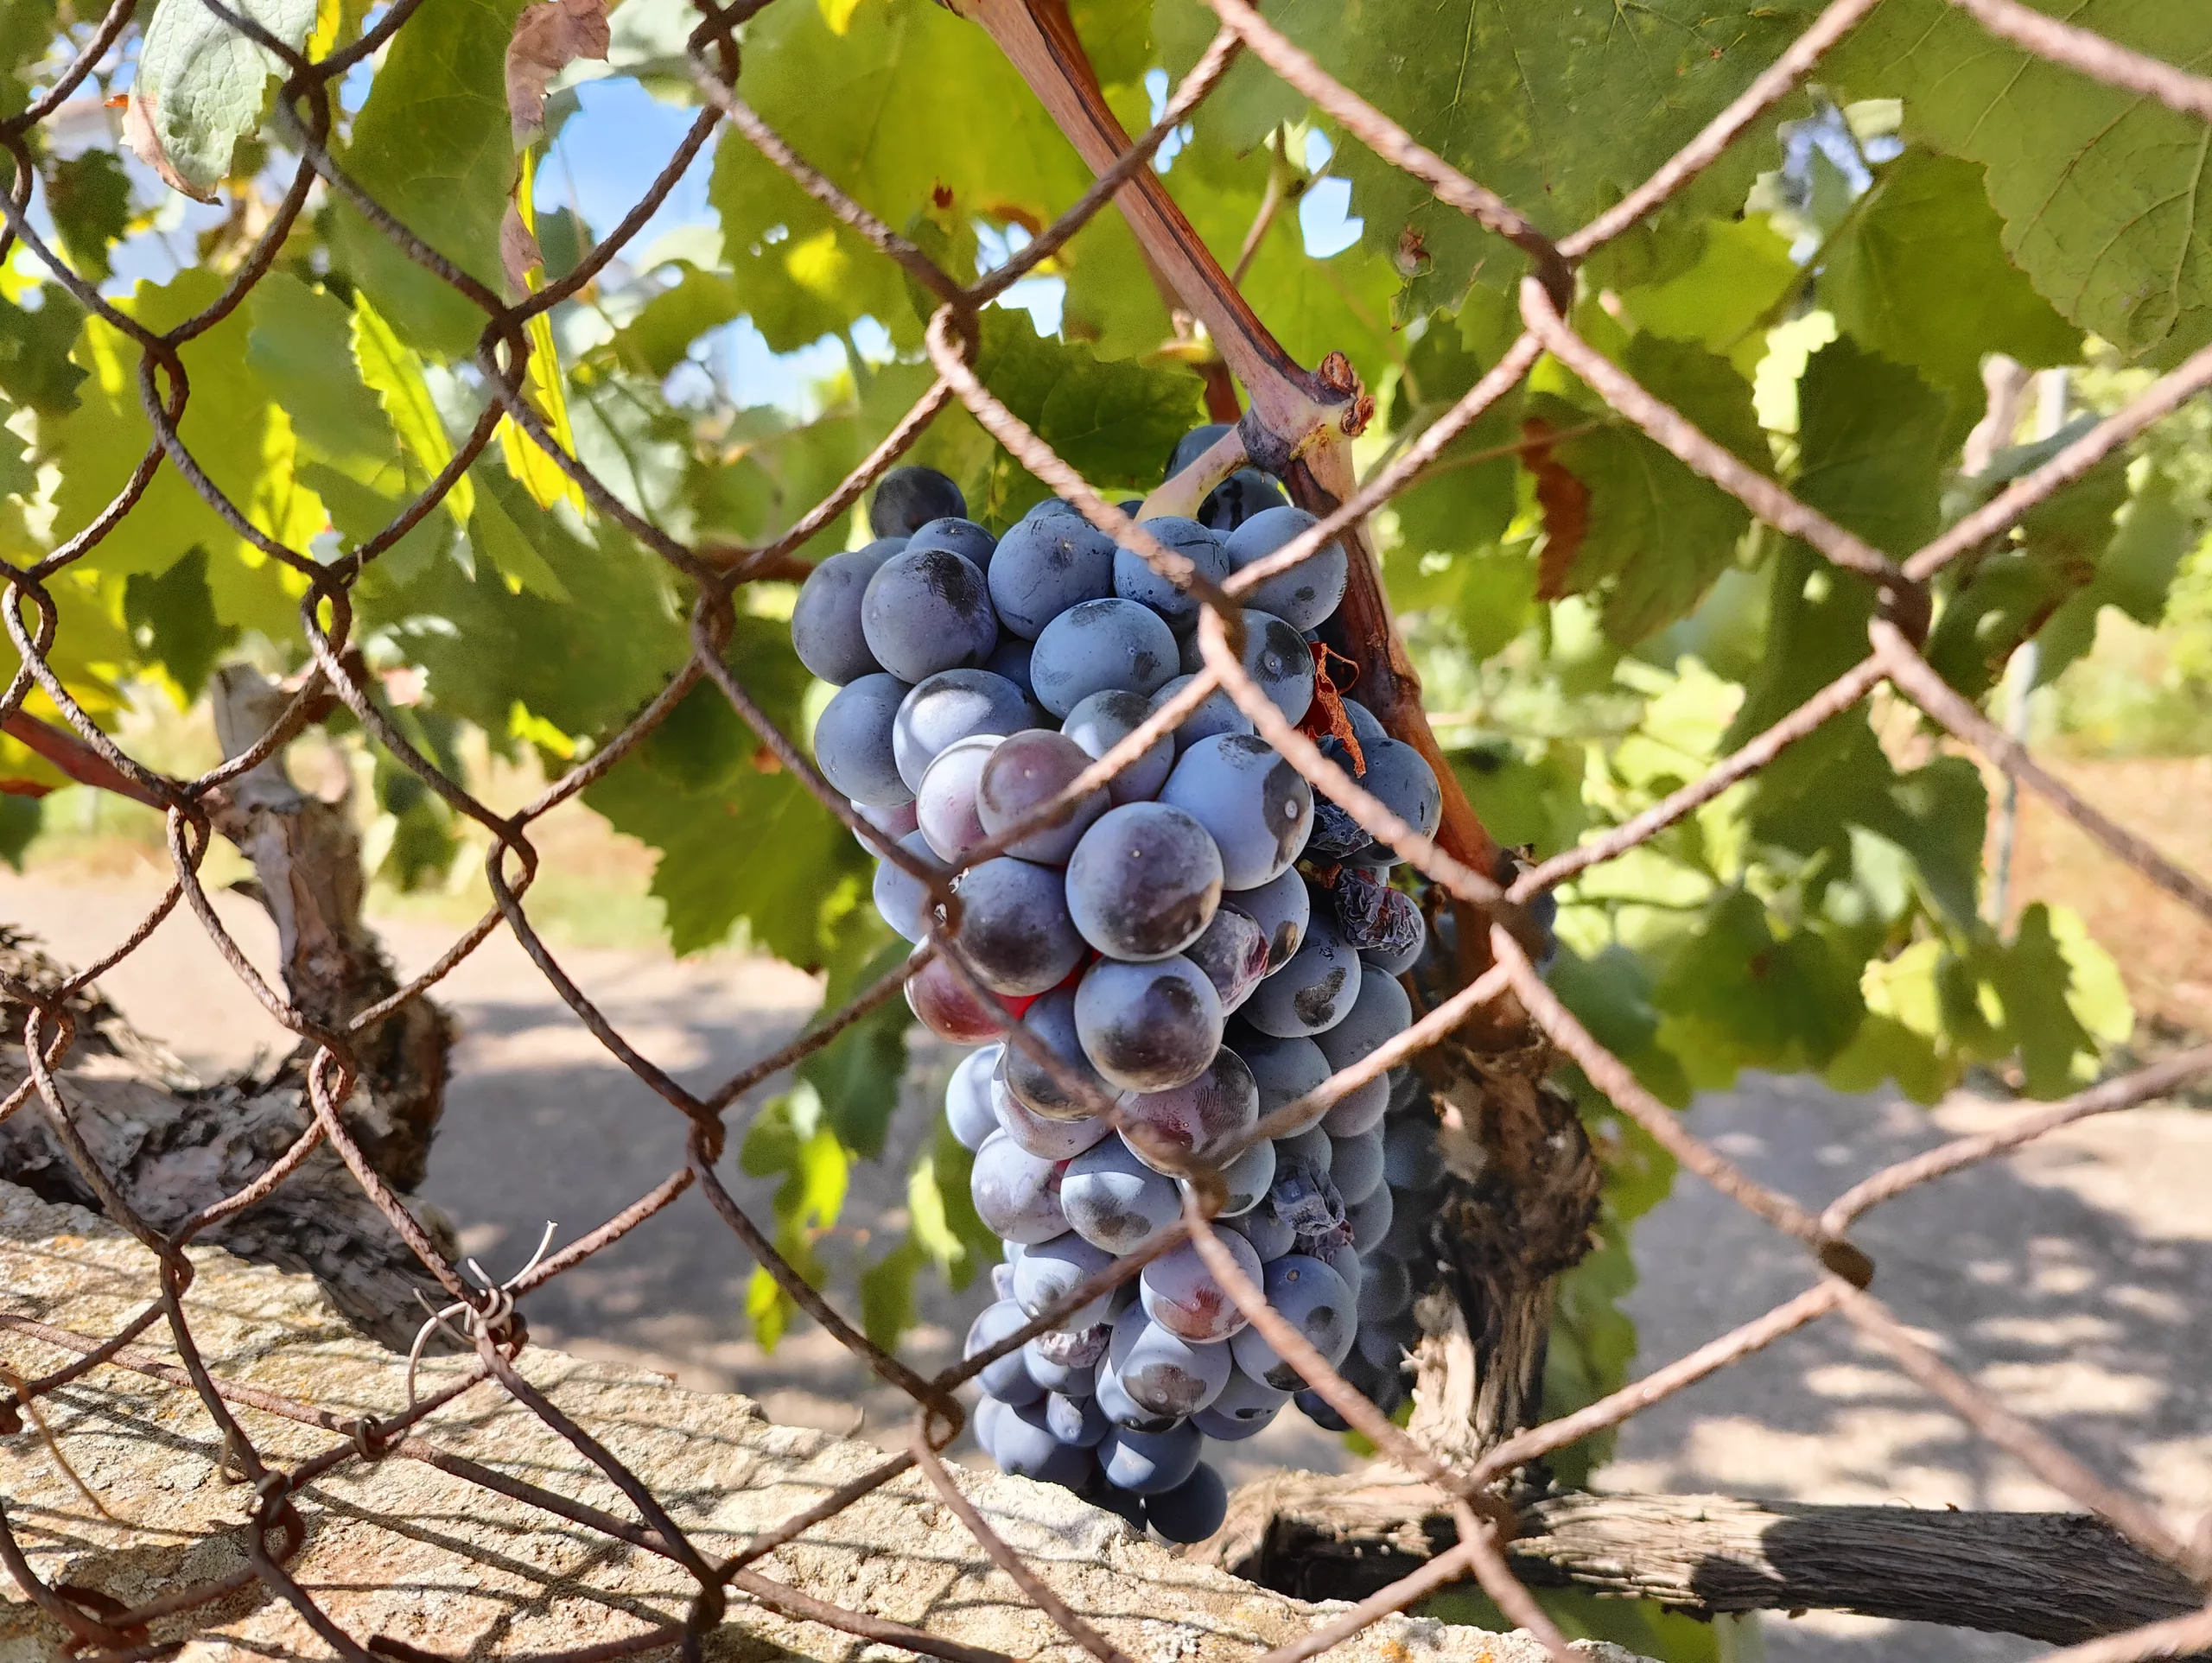 Mantonegro grapes in Mallorca